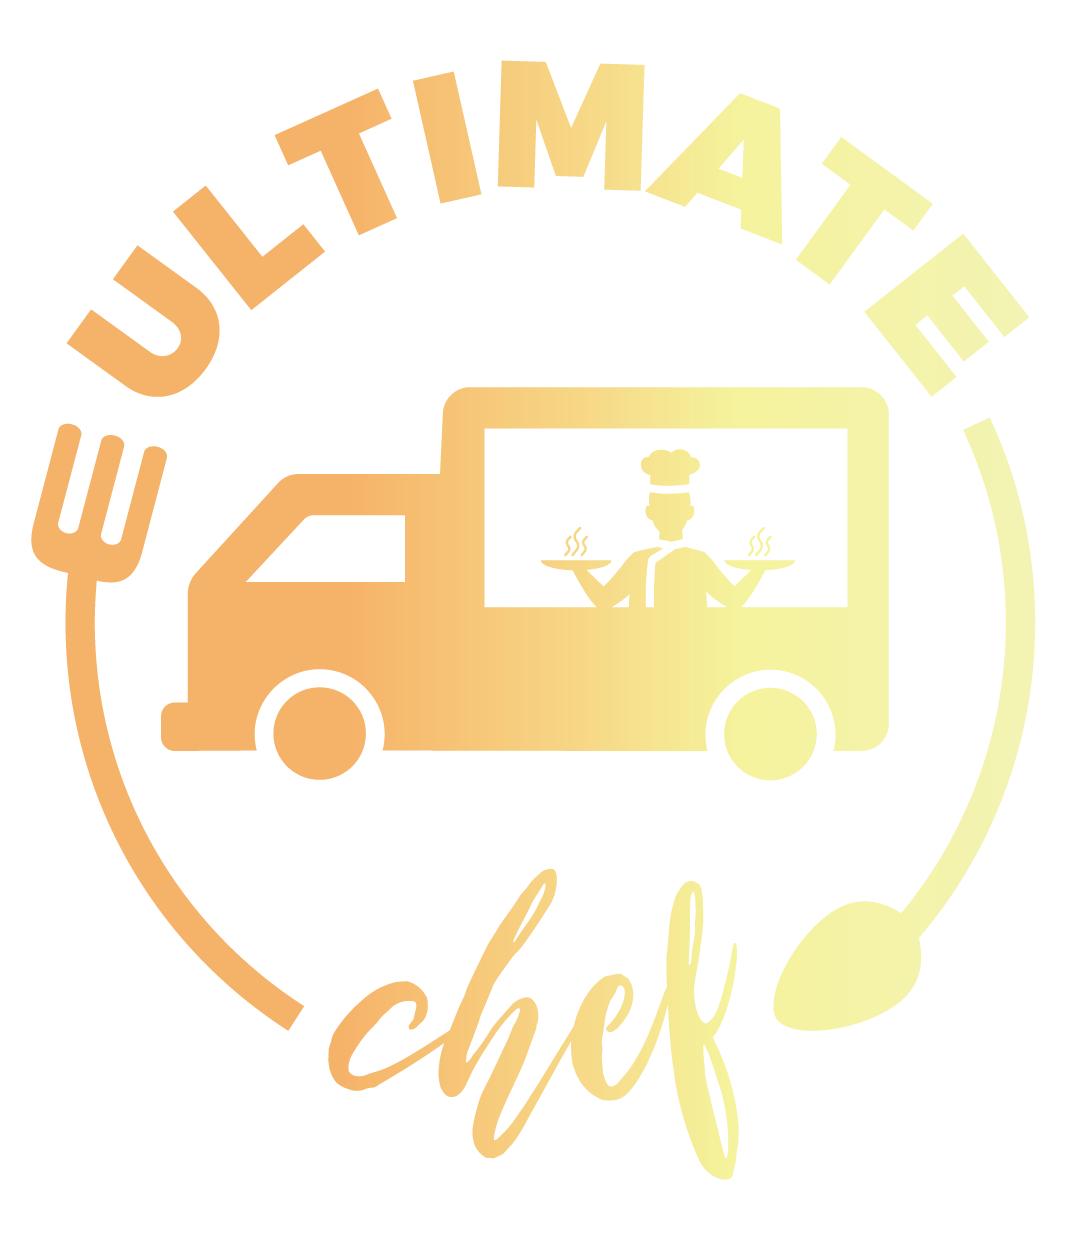 Ultimate Chef Stellenbosch